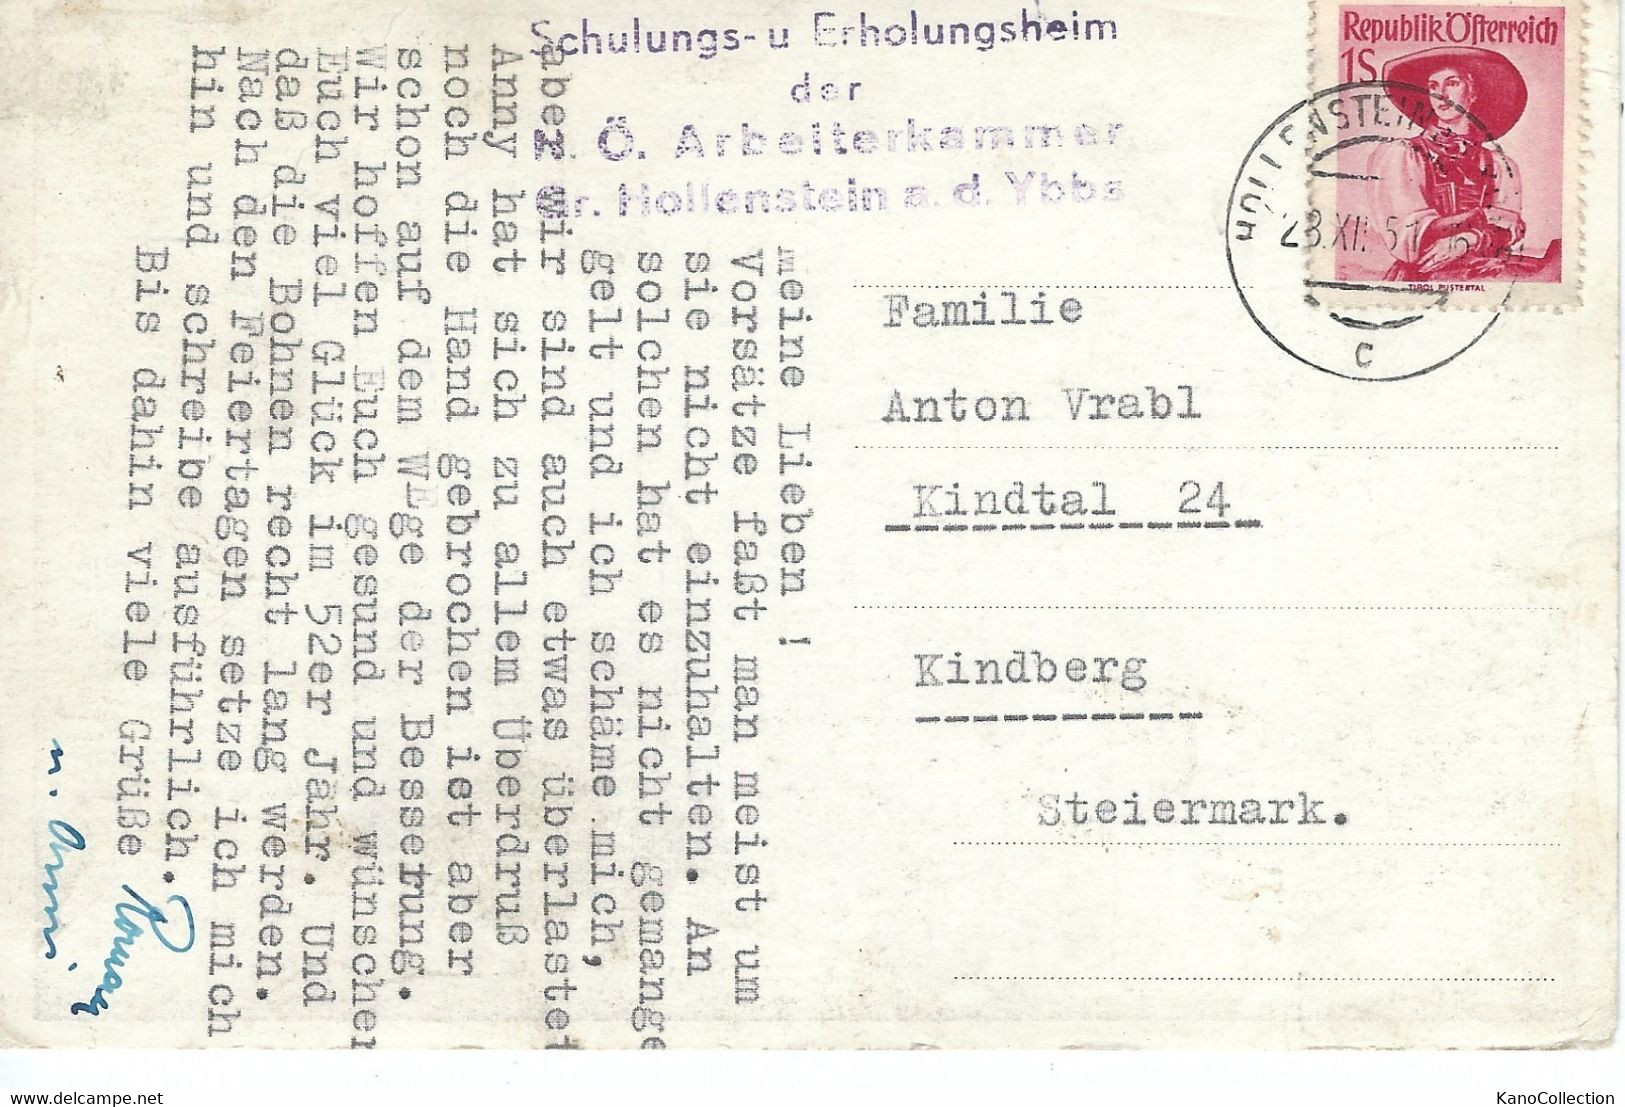 Österreich; Groß-Hollenstein An Der Ybbs, Schulungs- Und Erholungsheim Der Öst- Arbeiterkammer, 1951 - Labor Unions